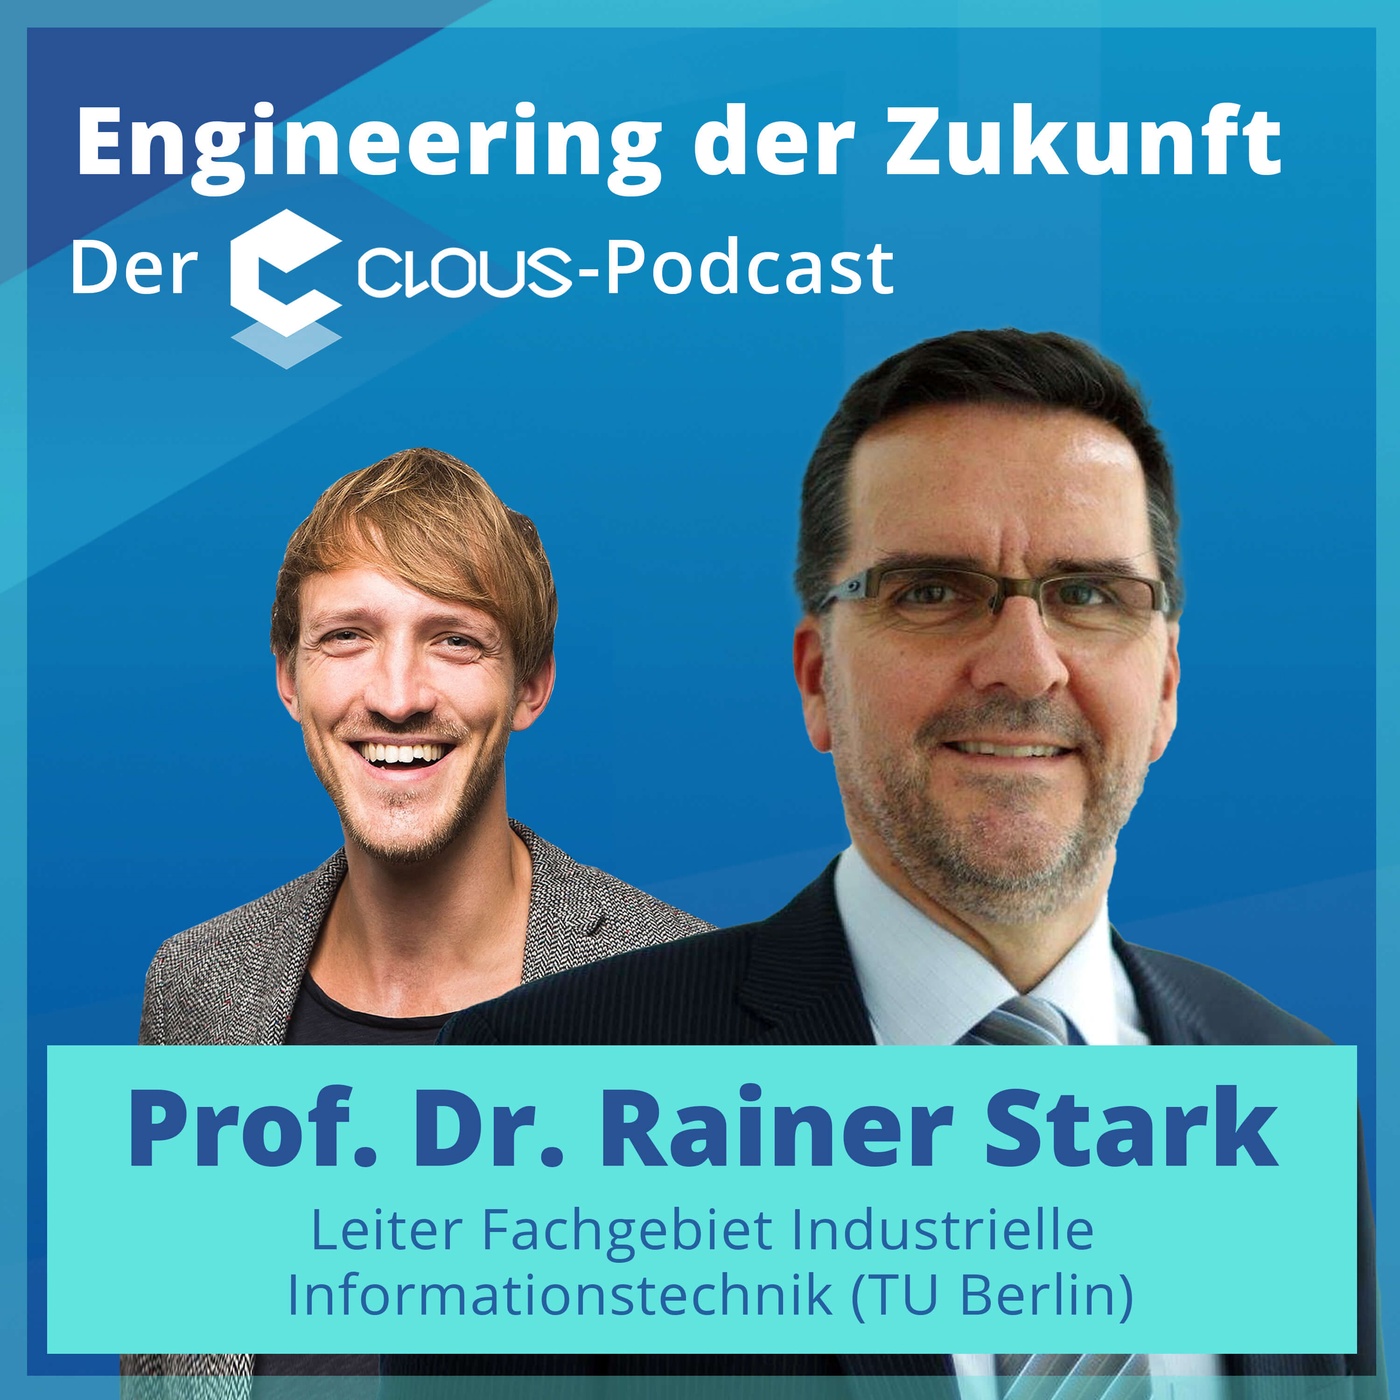 Kompetenzbasierte Technologien in der Industrie & virtuelle Produktentwicklung (Prof. Dr. Rainer Stark)